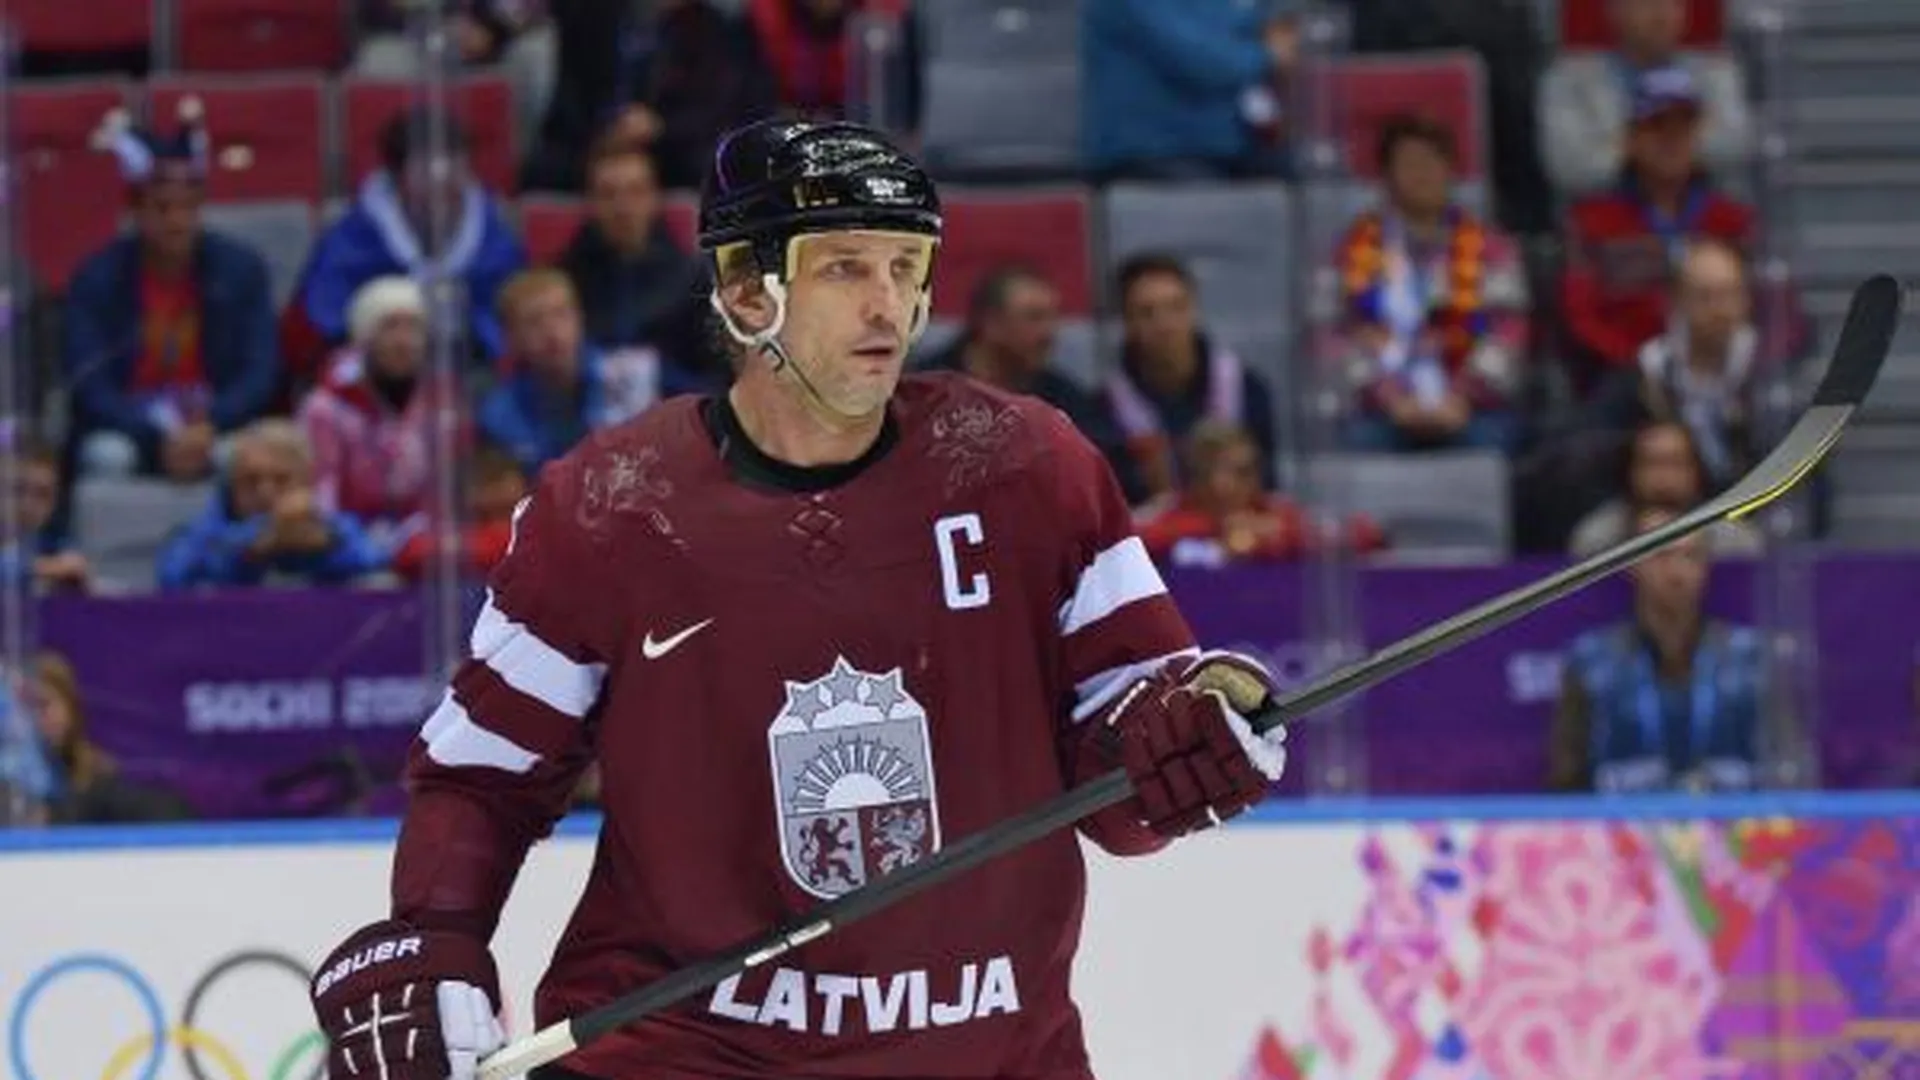 Сандис Озолиньш (Латвия) в четвертьфинальном матче между сборными командами Канады и Латвии в соревнованиях по хоккею среди мужчин на XXII зимних Олимпийских играх в Сочи, февраль 2014 года